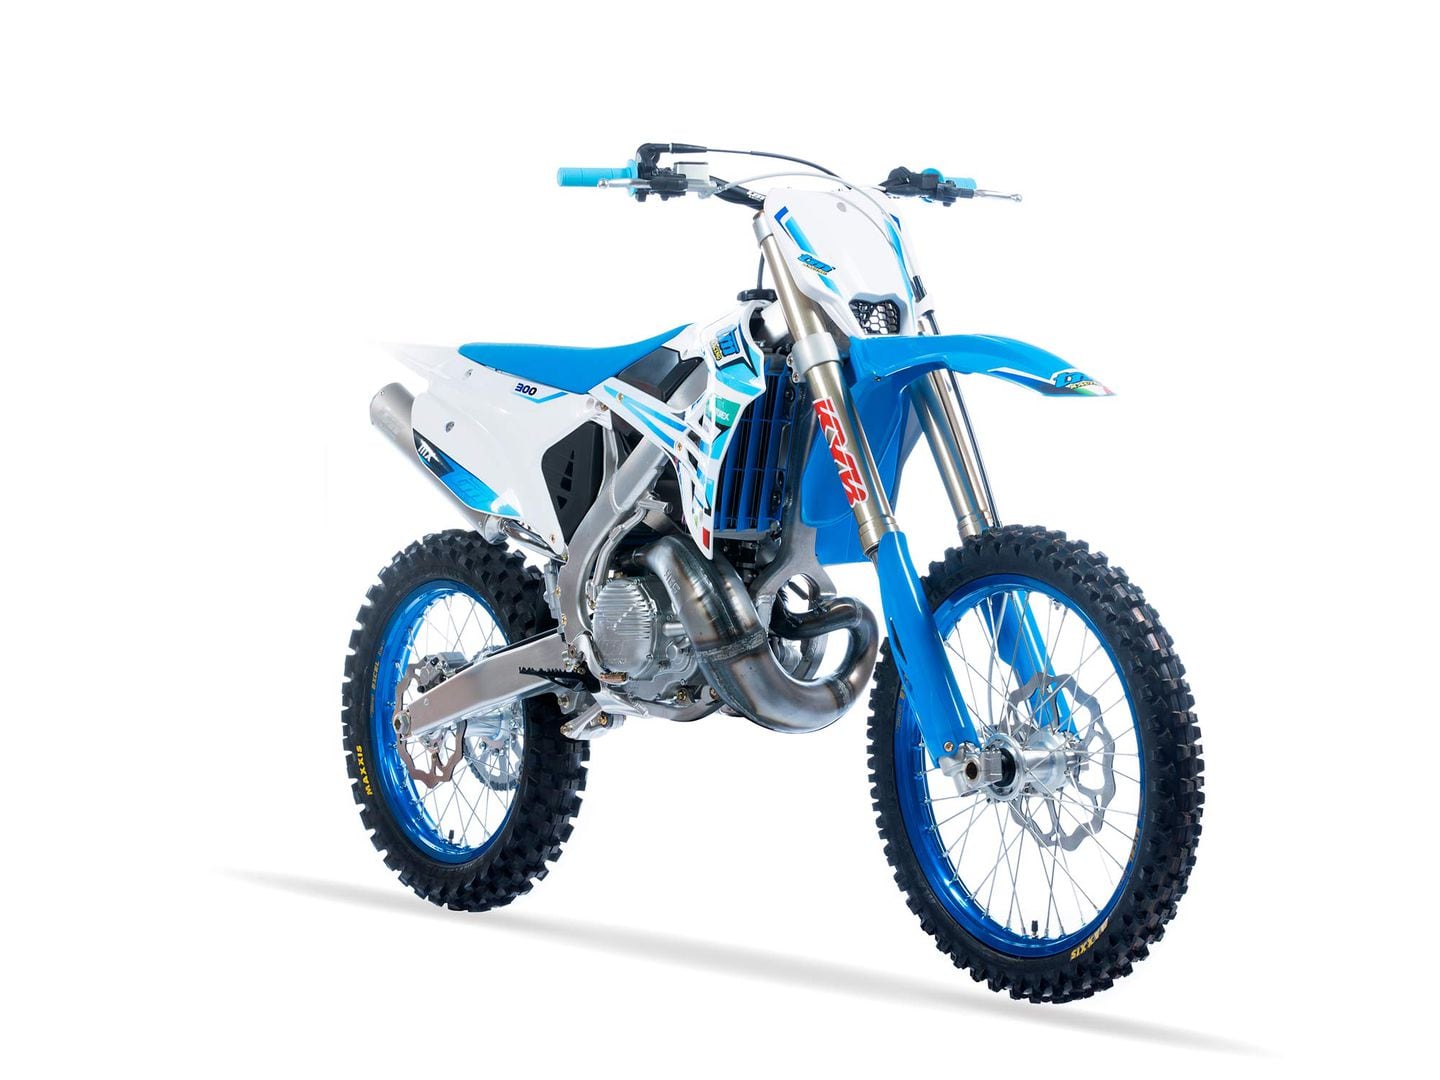 PRIMEIRO VISUAL: TM MOTOCYCLES PARA 2023 - Revista Dirt Bike